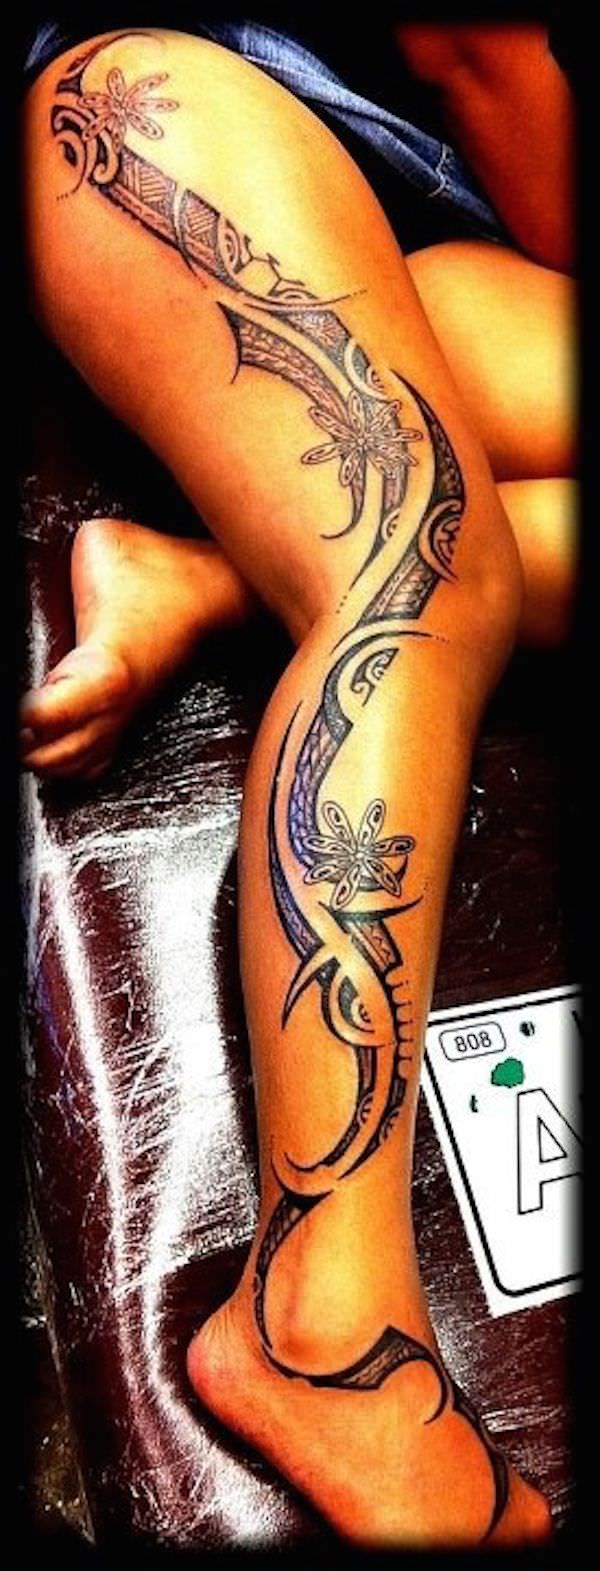 quite popular tribal tattoo design